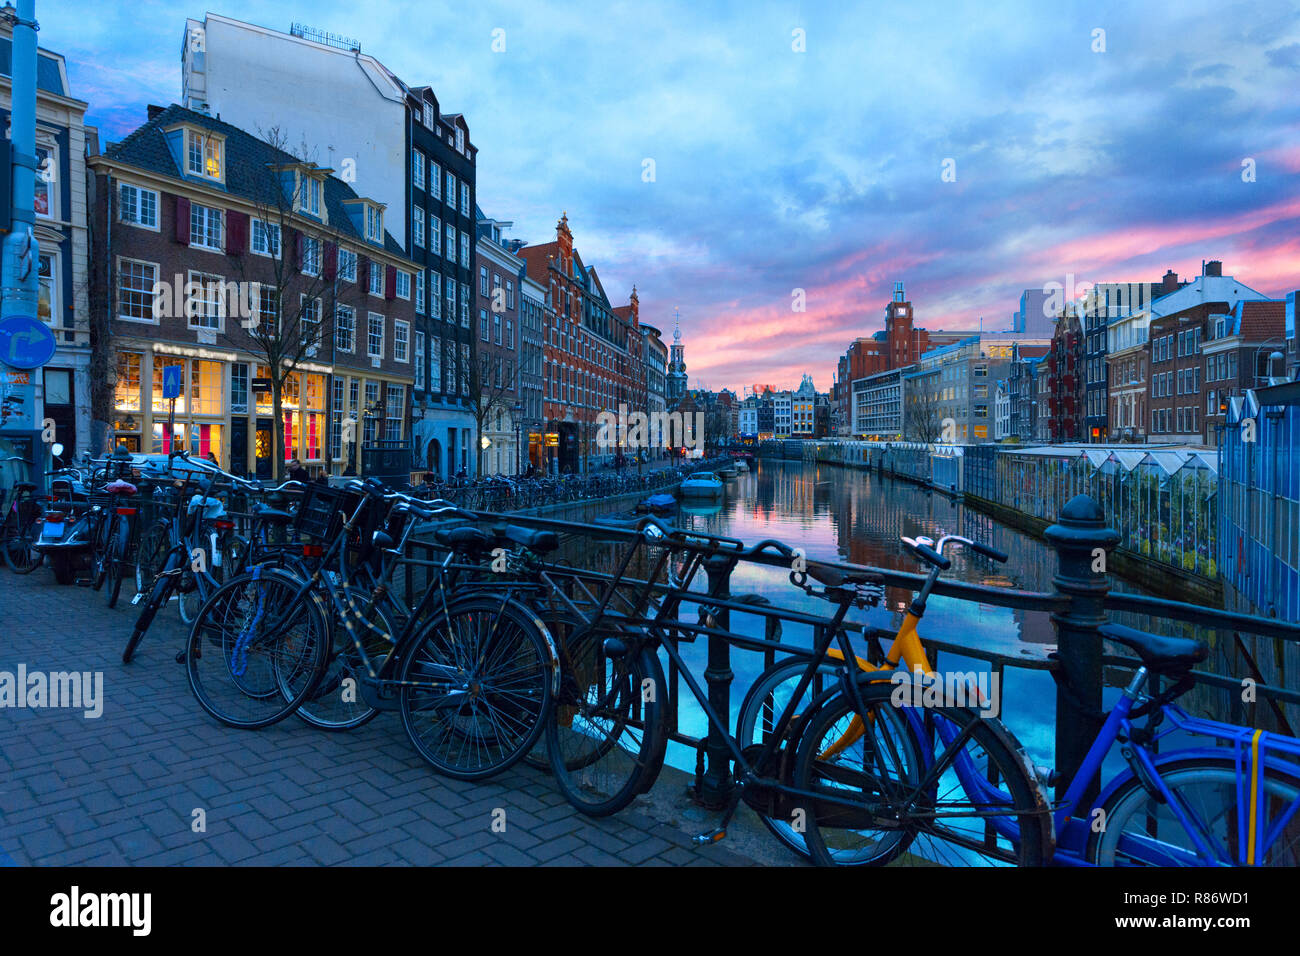 Malerischer Blick auf den Singel Kanal bei Sonnenuntergang, Amsterdam, Niederlande. Stockfoto